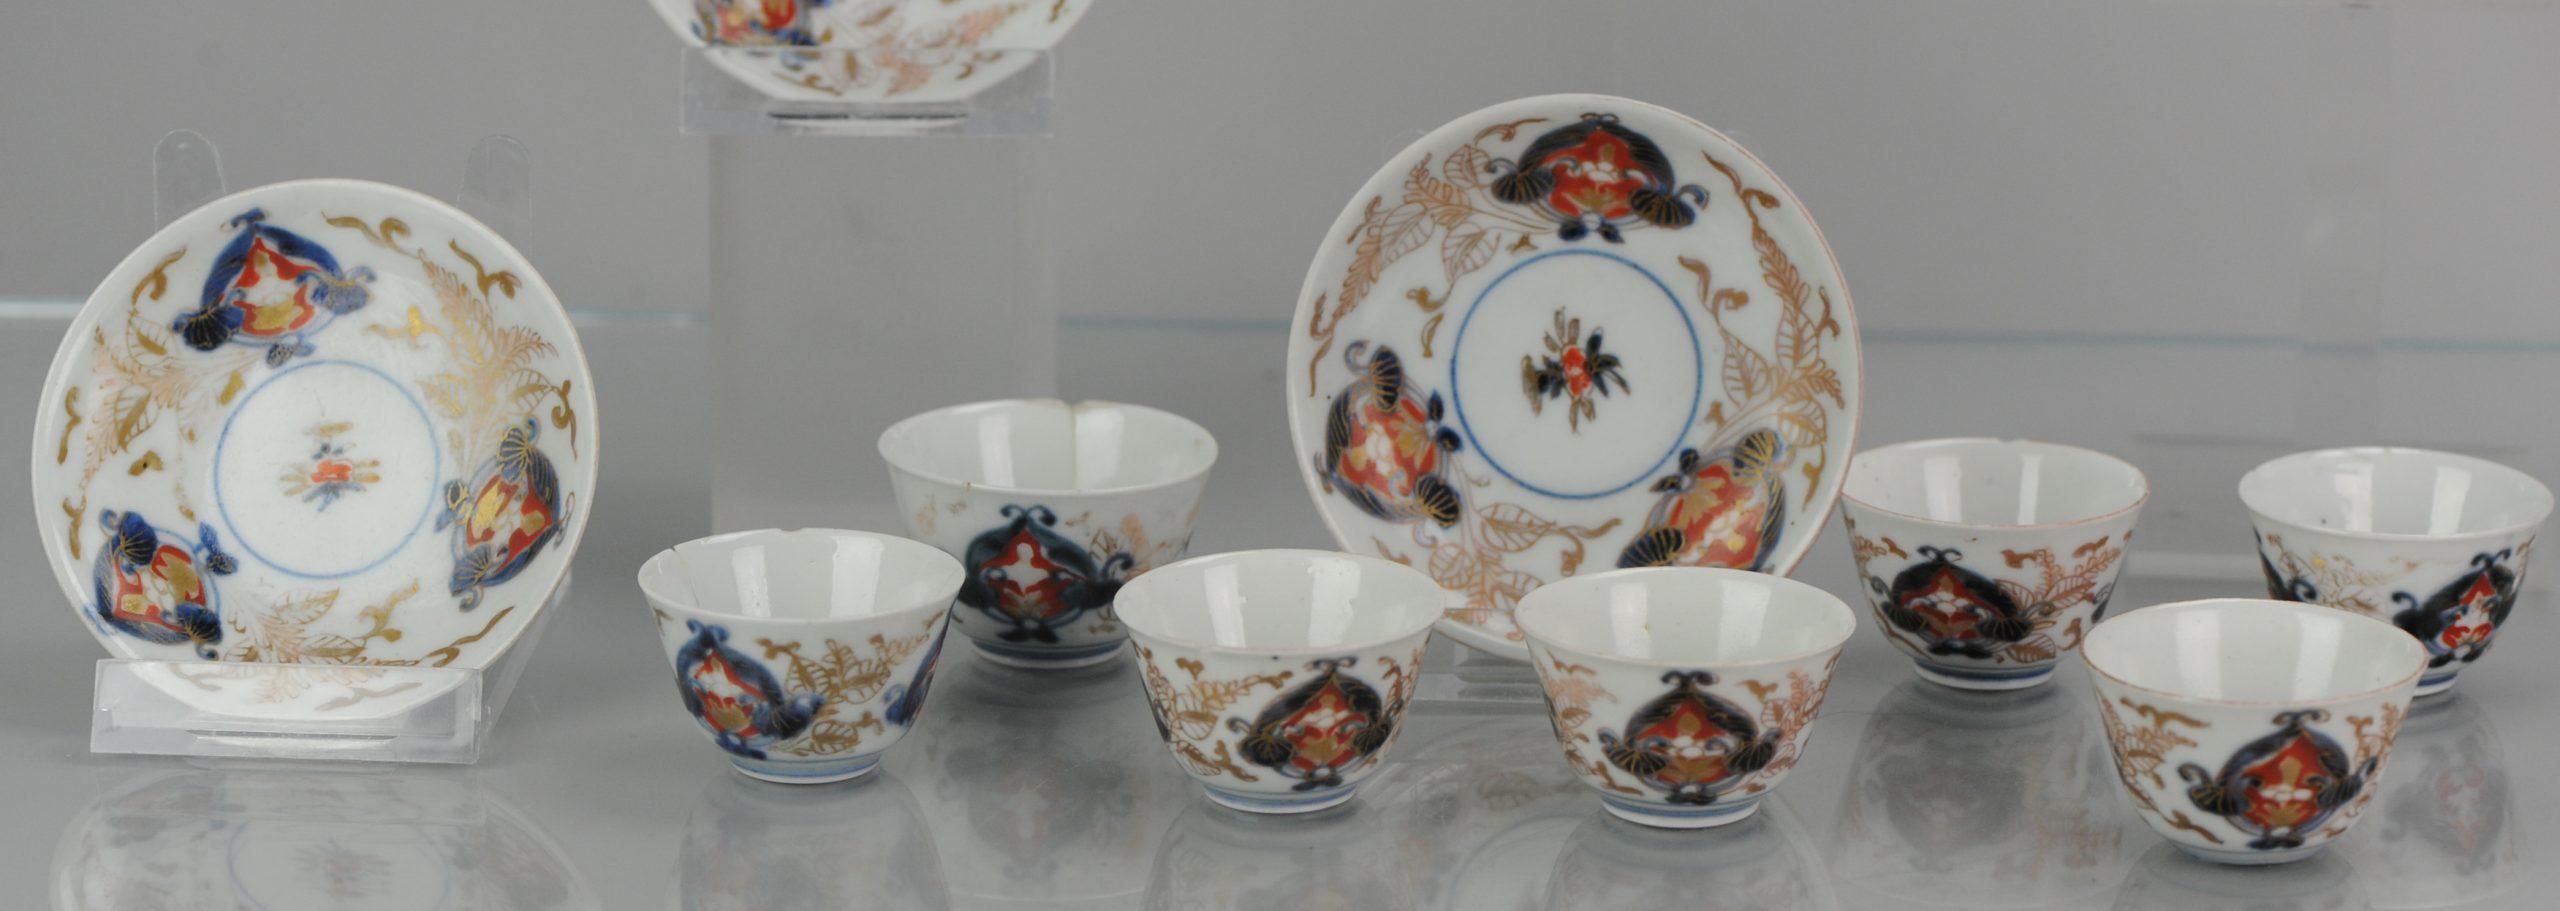 Japanese Porcelain Set of Tea Cup Bowl and Saucer Beaker Saucer Imari Edo Period For Sale 4